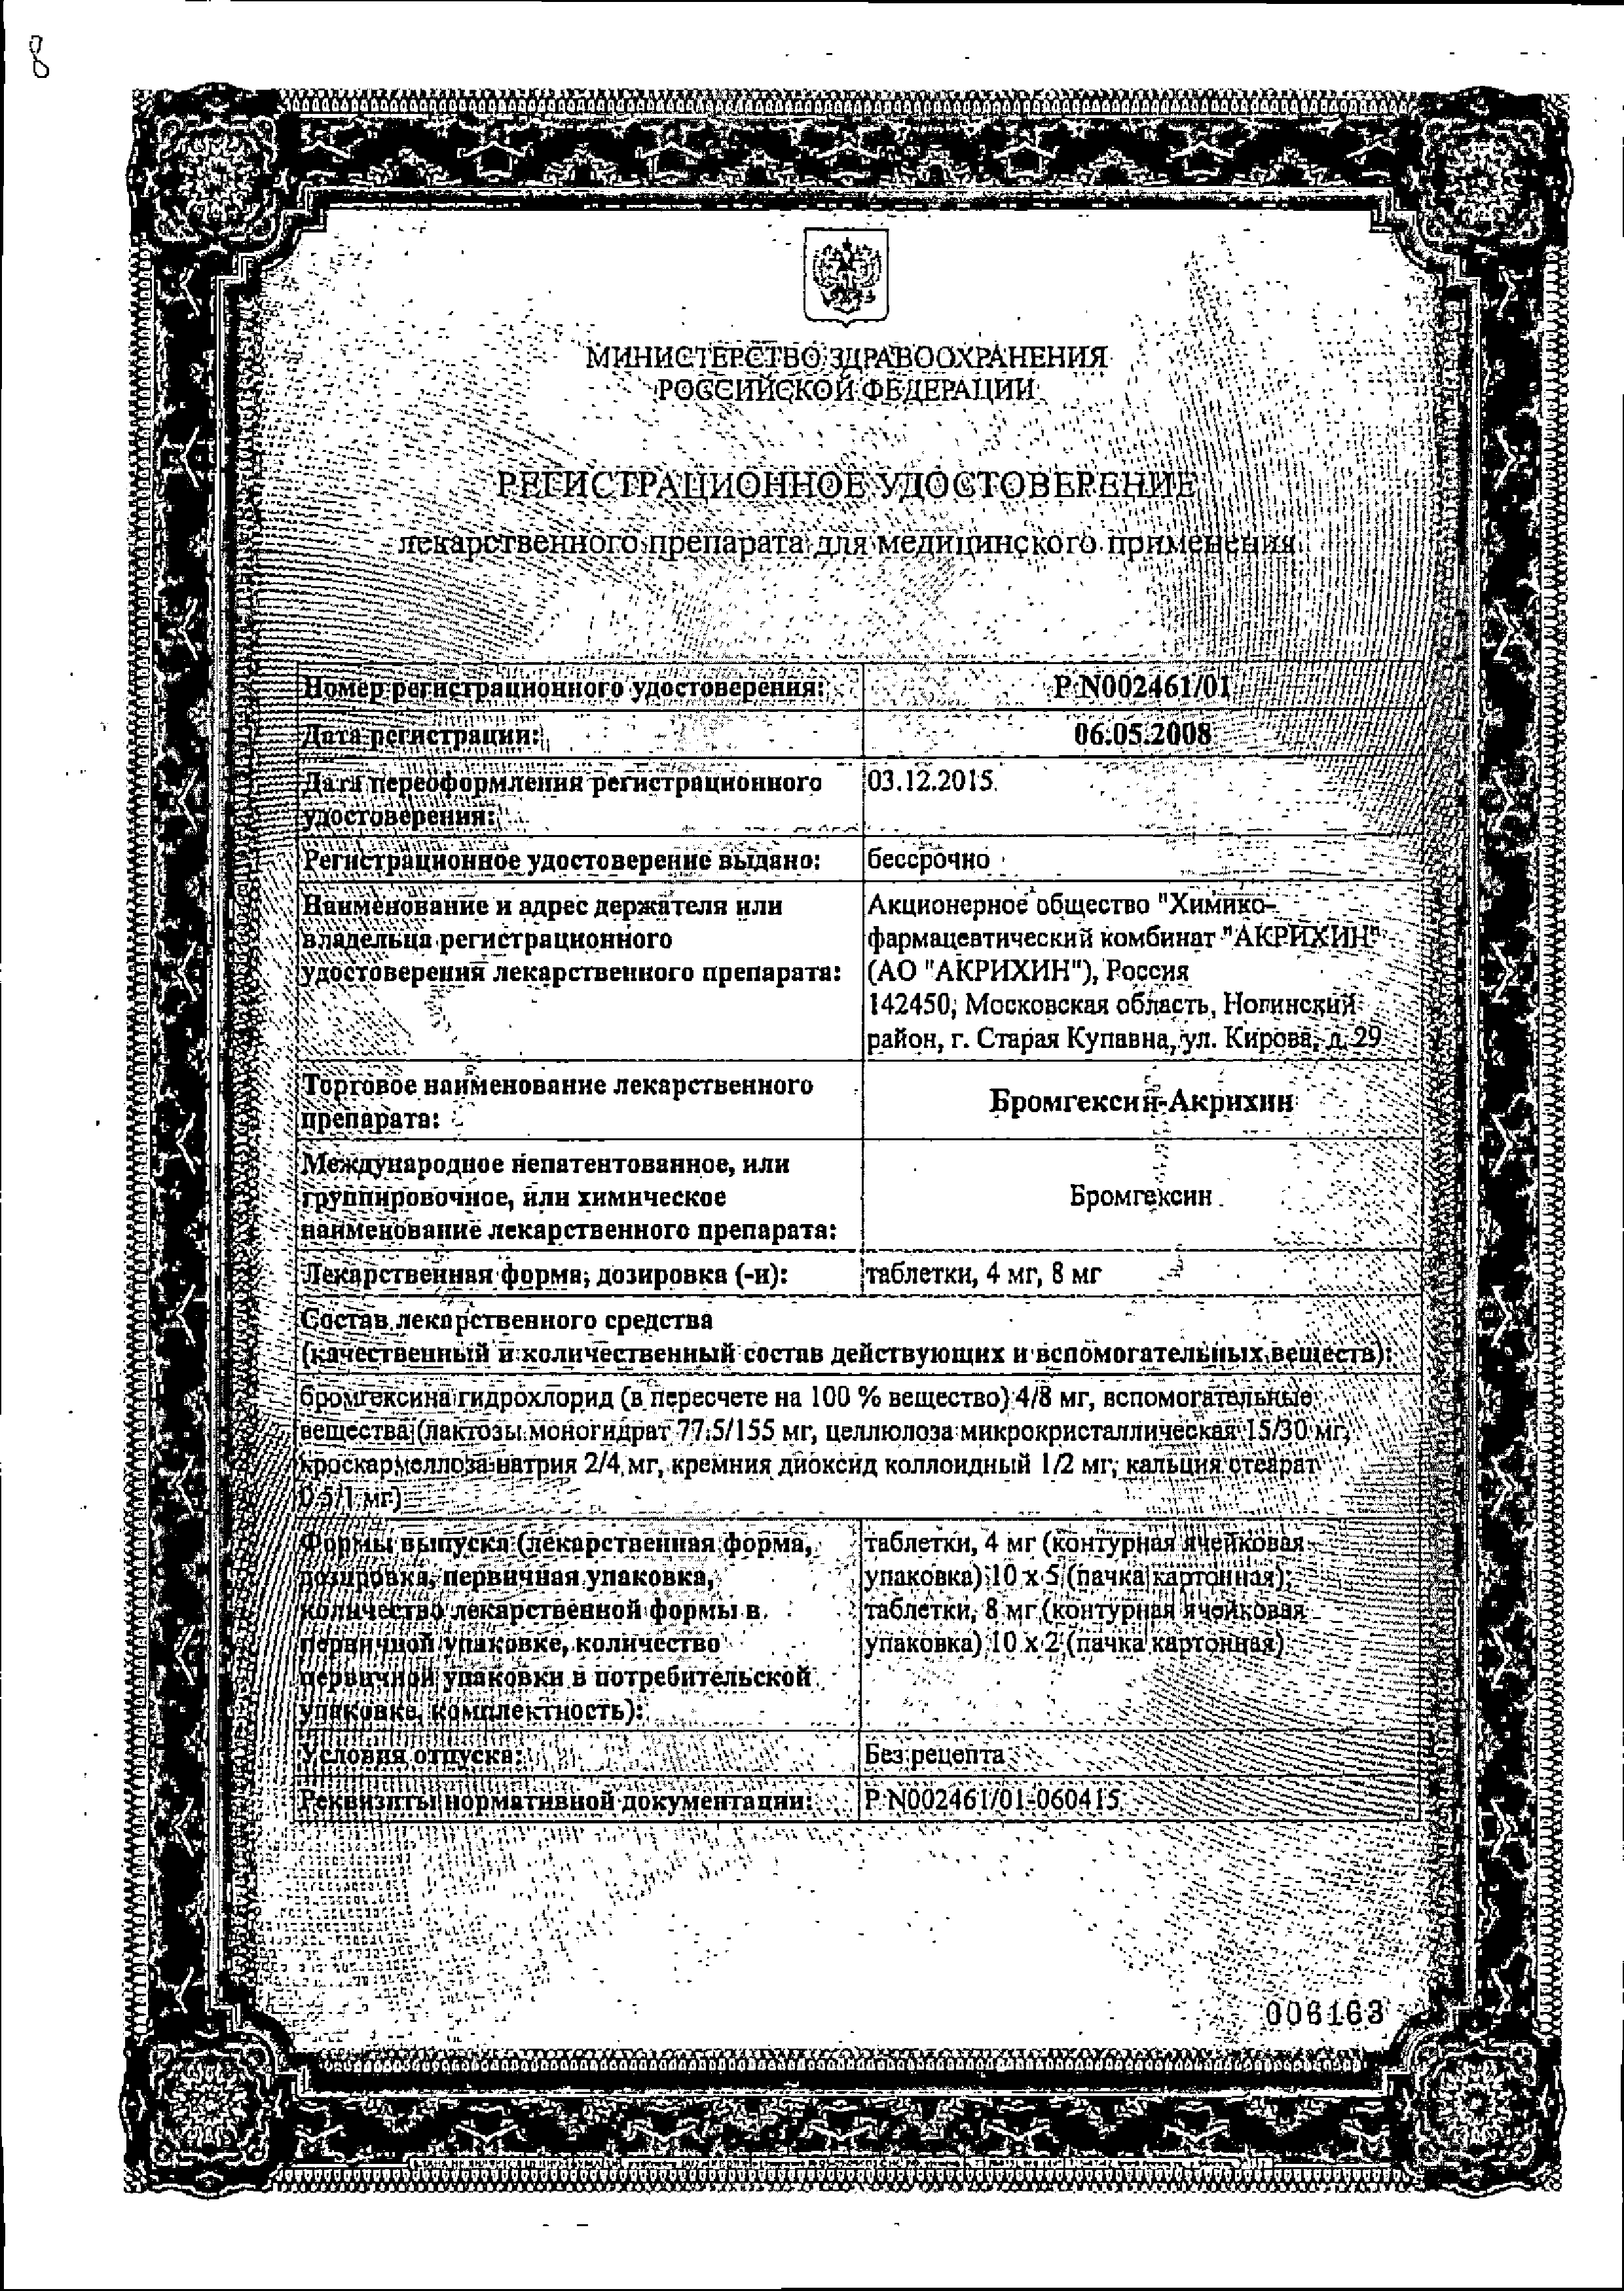 Бромгексин-Акрихин сертификат